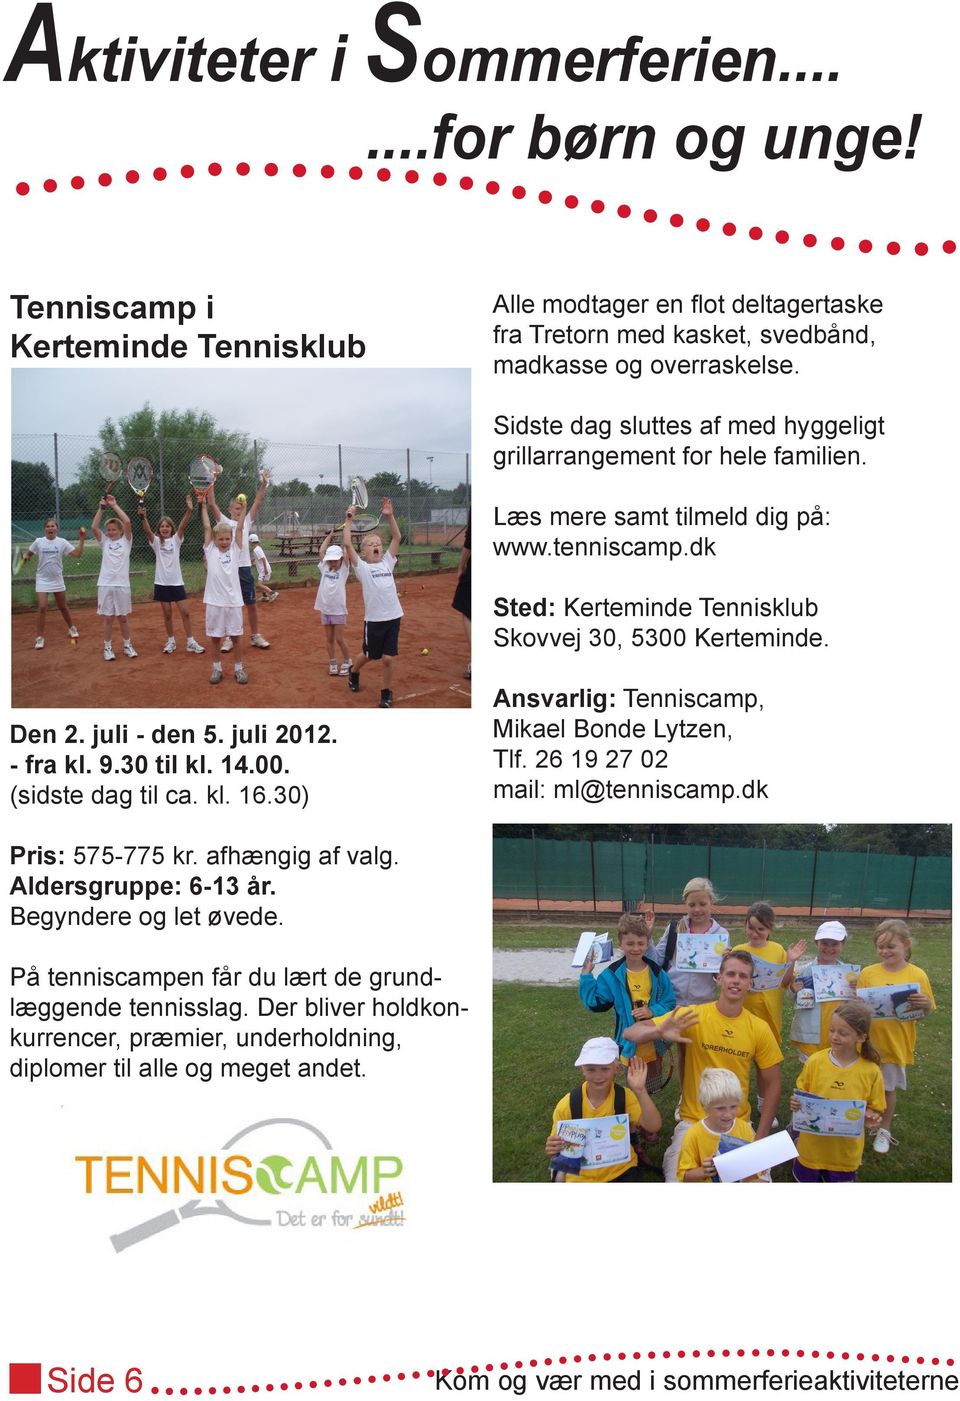 Den 2. juli - den 5. juli 2012. - fra kl. 9.30 til kl. 14.00. (sidste dag til ca. kl. 16.30) Ansvarlig: Tenniscamp, Mikael Bonde Lytzen, Tlf. 26 19 27 02 mail: ml@tenniscamp.